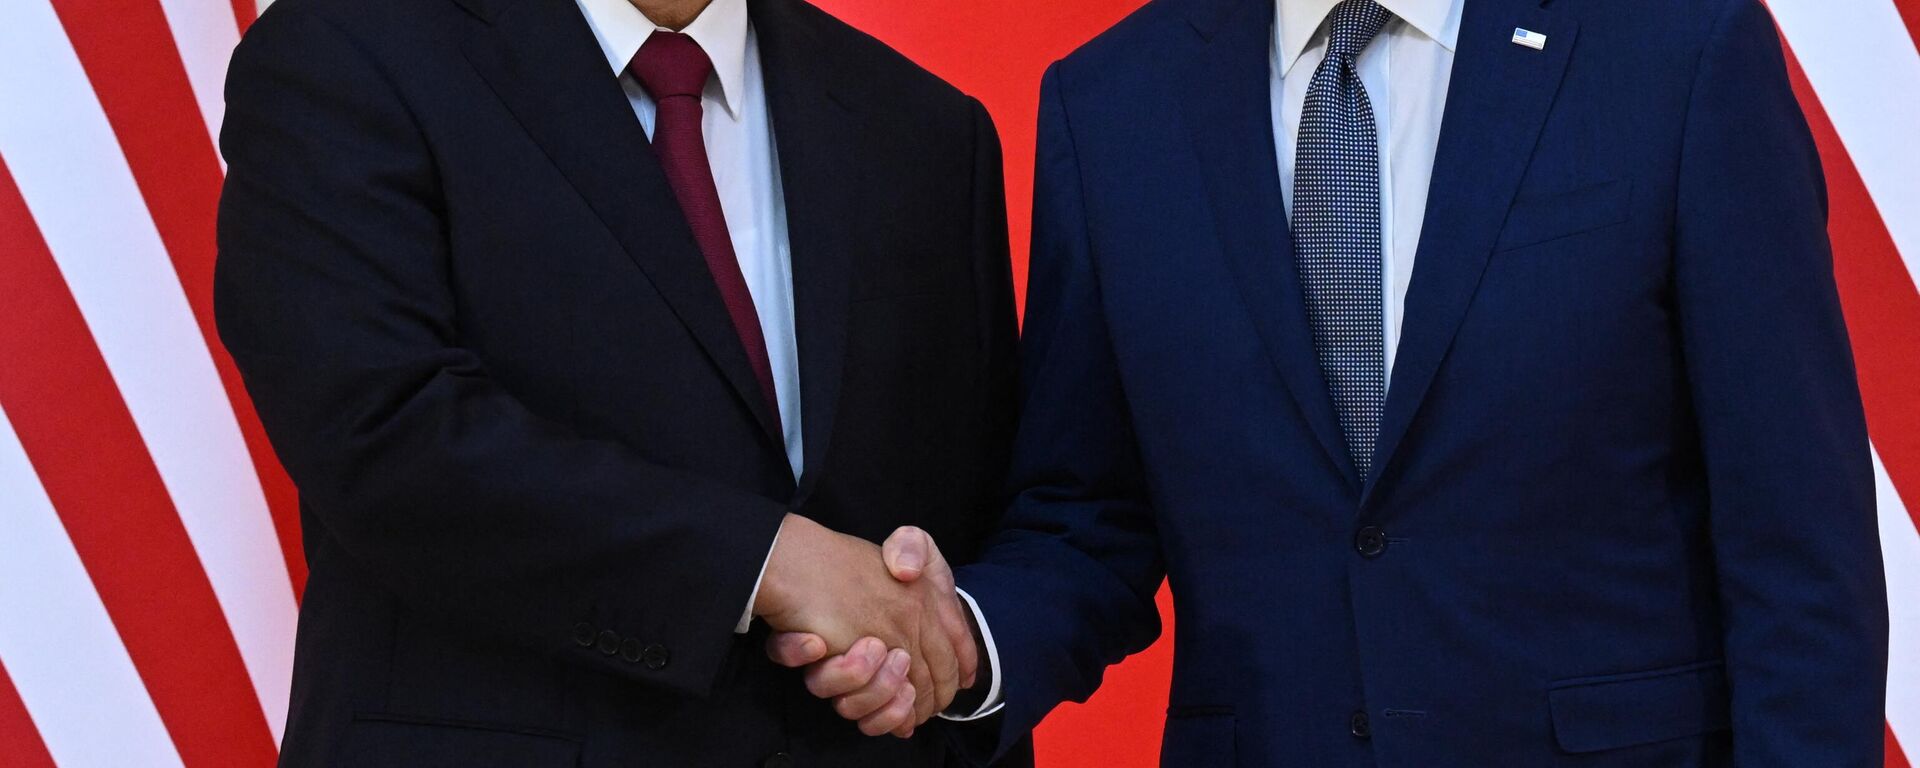 Endonezya'nın Bali Adası'nda düzenlenen G20 zirvesinde, ABD Başkanı Joe Biden ile Çin Devlet Başkanı Şi Cinping arasındaki ilk yüz yüze görüşmenin el sıkışma faslı - Sputnik Türkiye, 1920, 14.11.2022